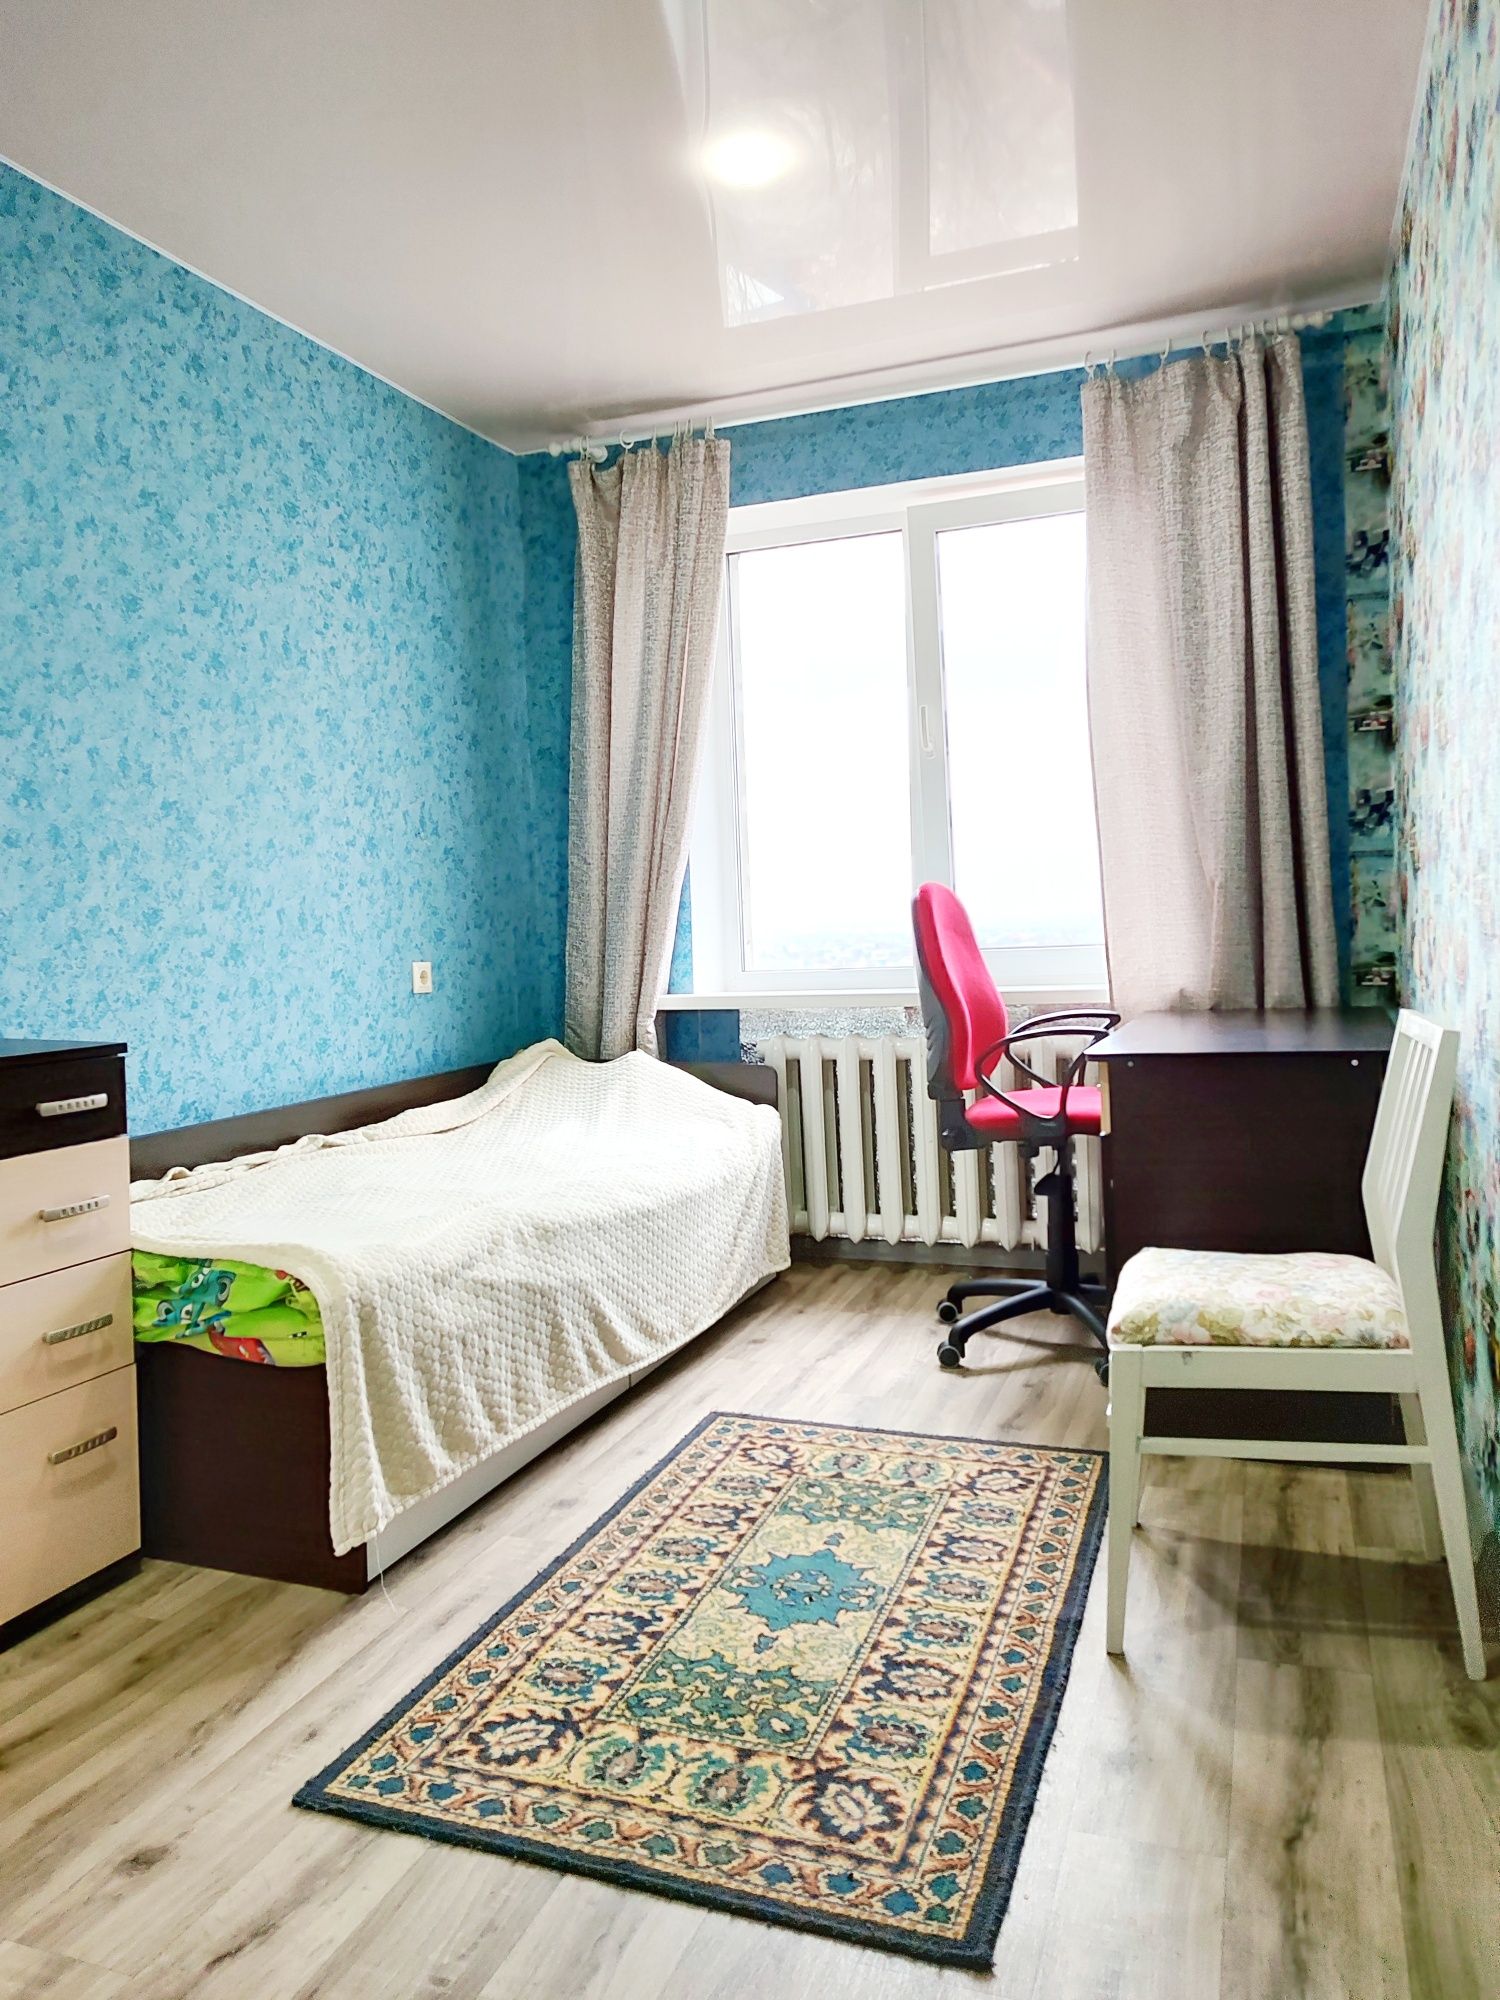 Продам 2-х комнатную квартиру в Новомосковске, район СШ-2